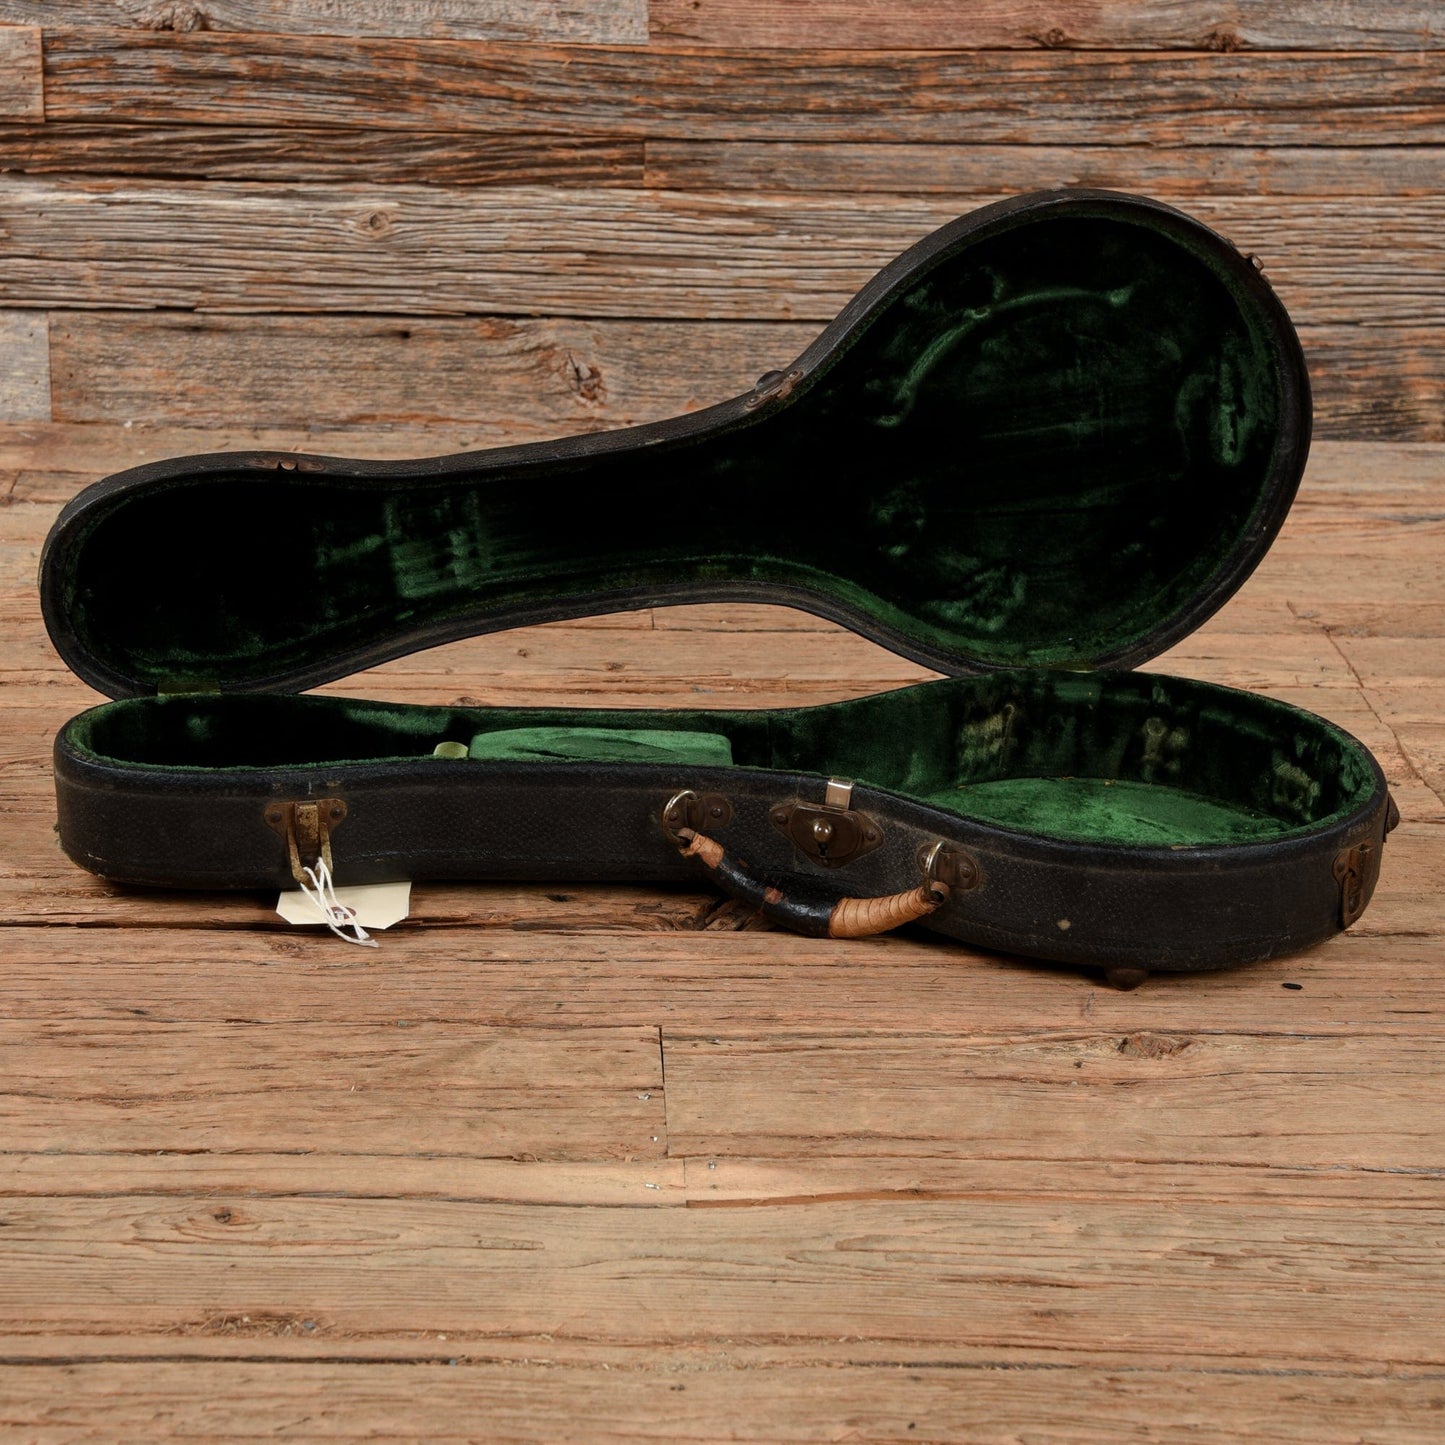 Washburn Banjo Ukulele  1930s Folk Instruments / Ukuleles